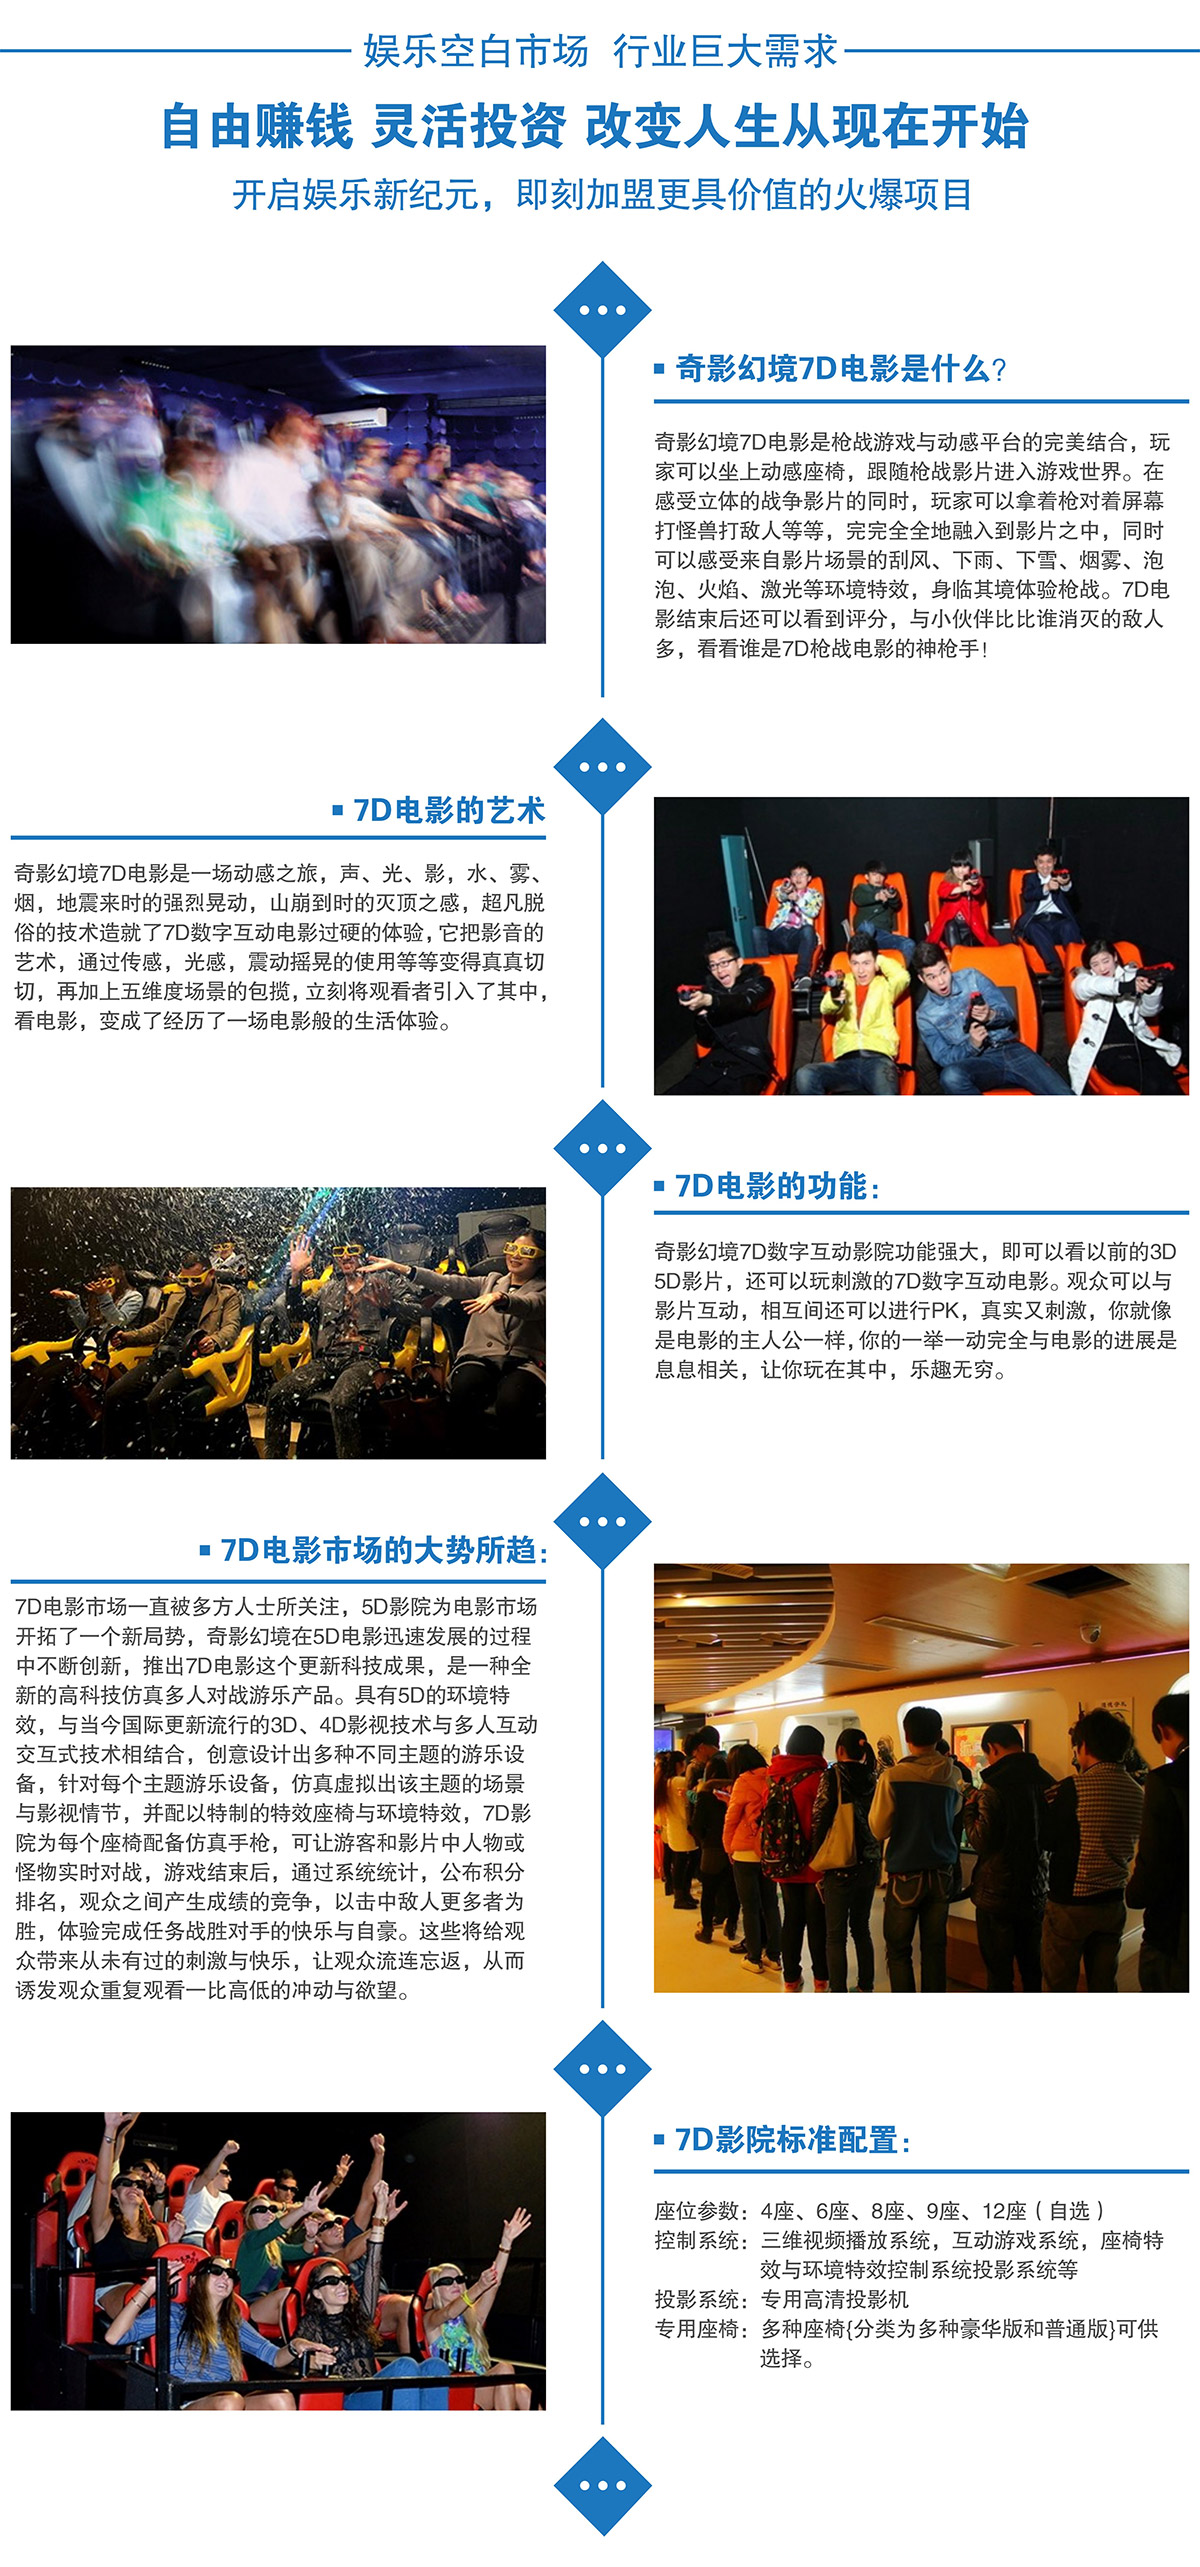 广东省广州奇影幻境娱乐7D电影院行业巨大需求.jpg